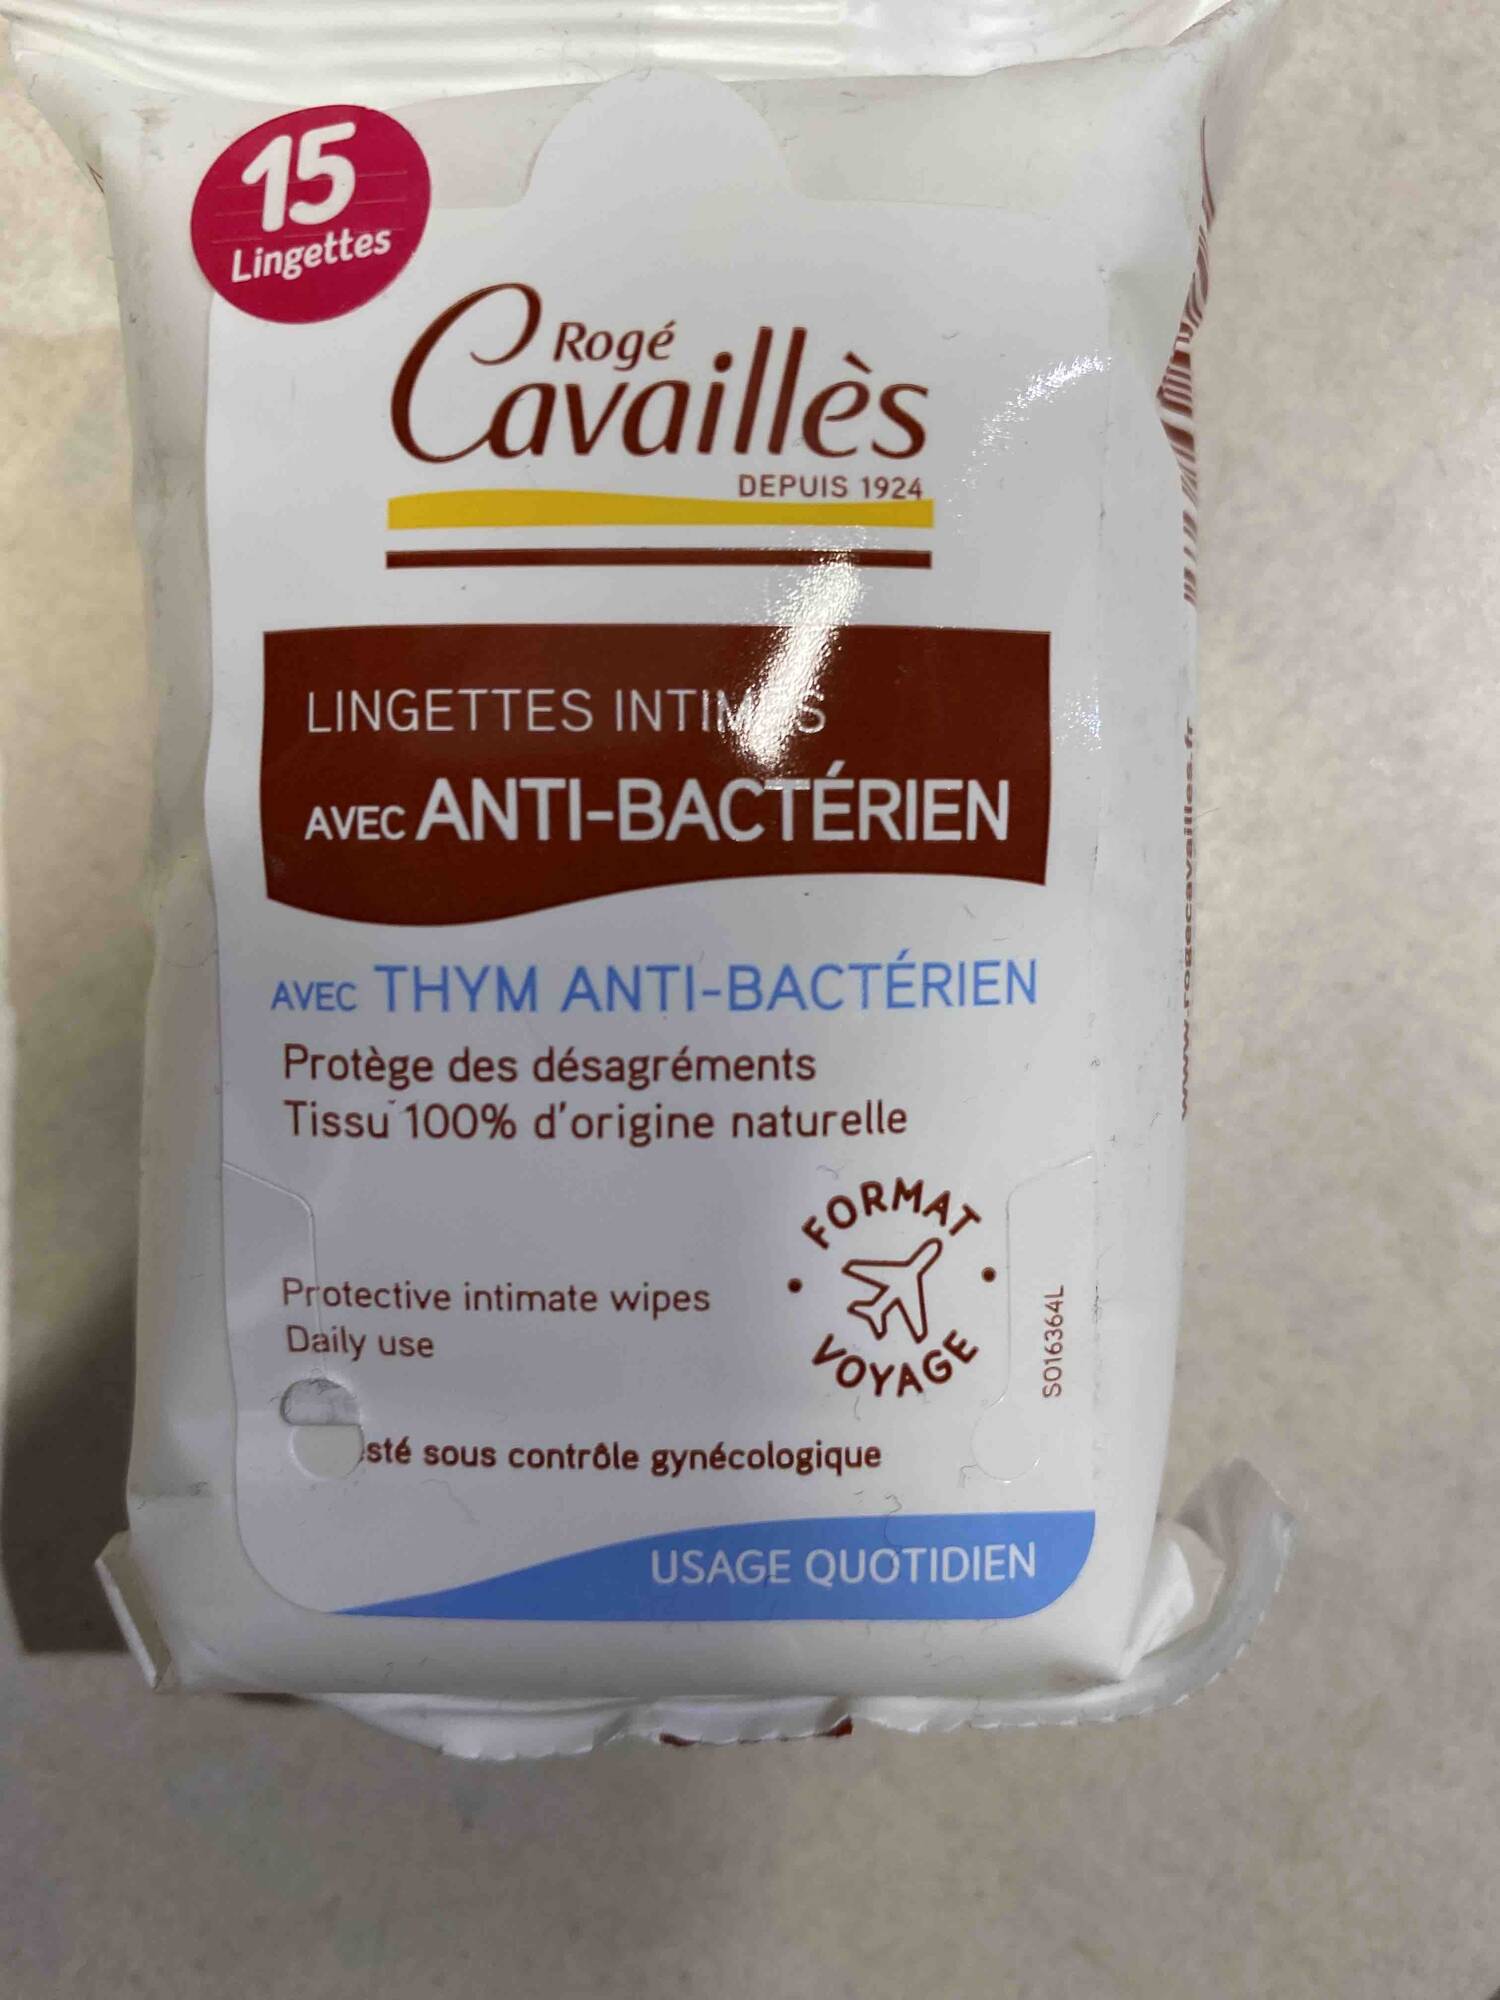 ROGÉ CAVAILLÈS - Lingettes intimes avec anti-bactérien